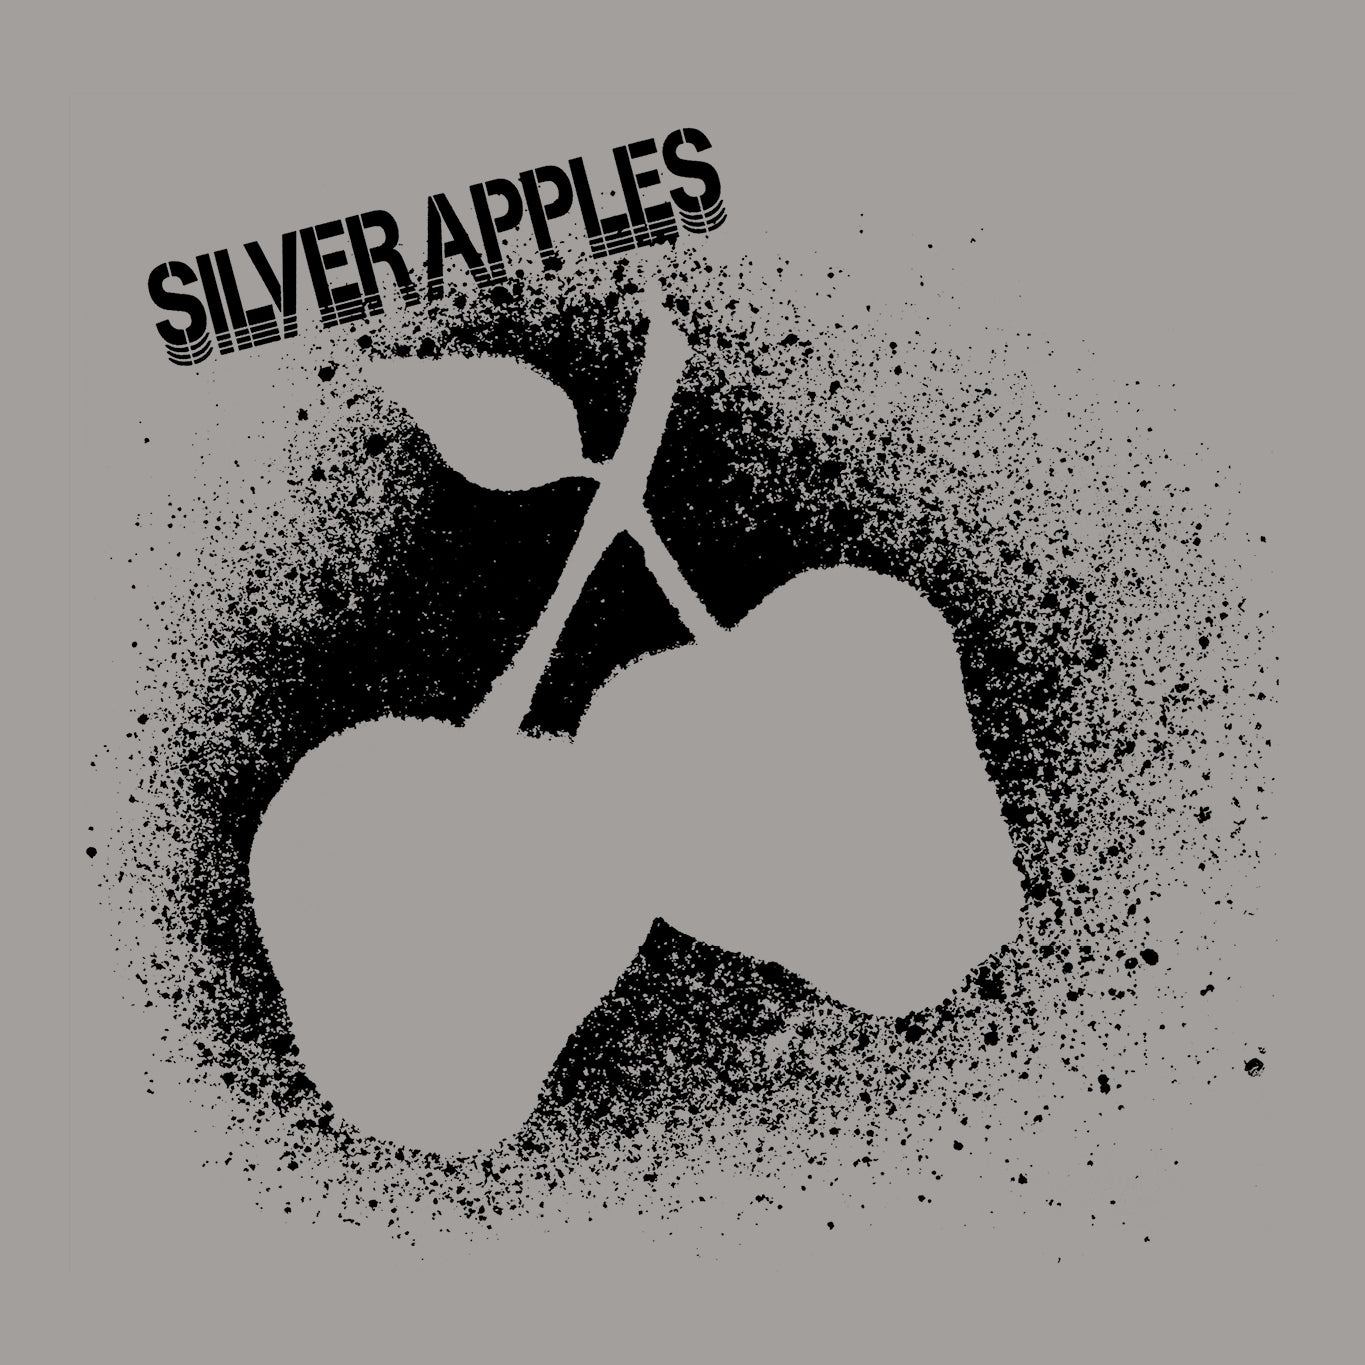 Diseño para Camiseta rock de la banda Silver Apples